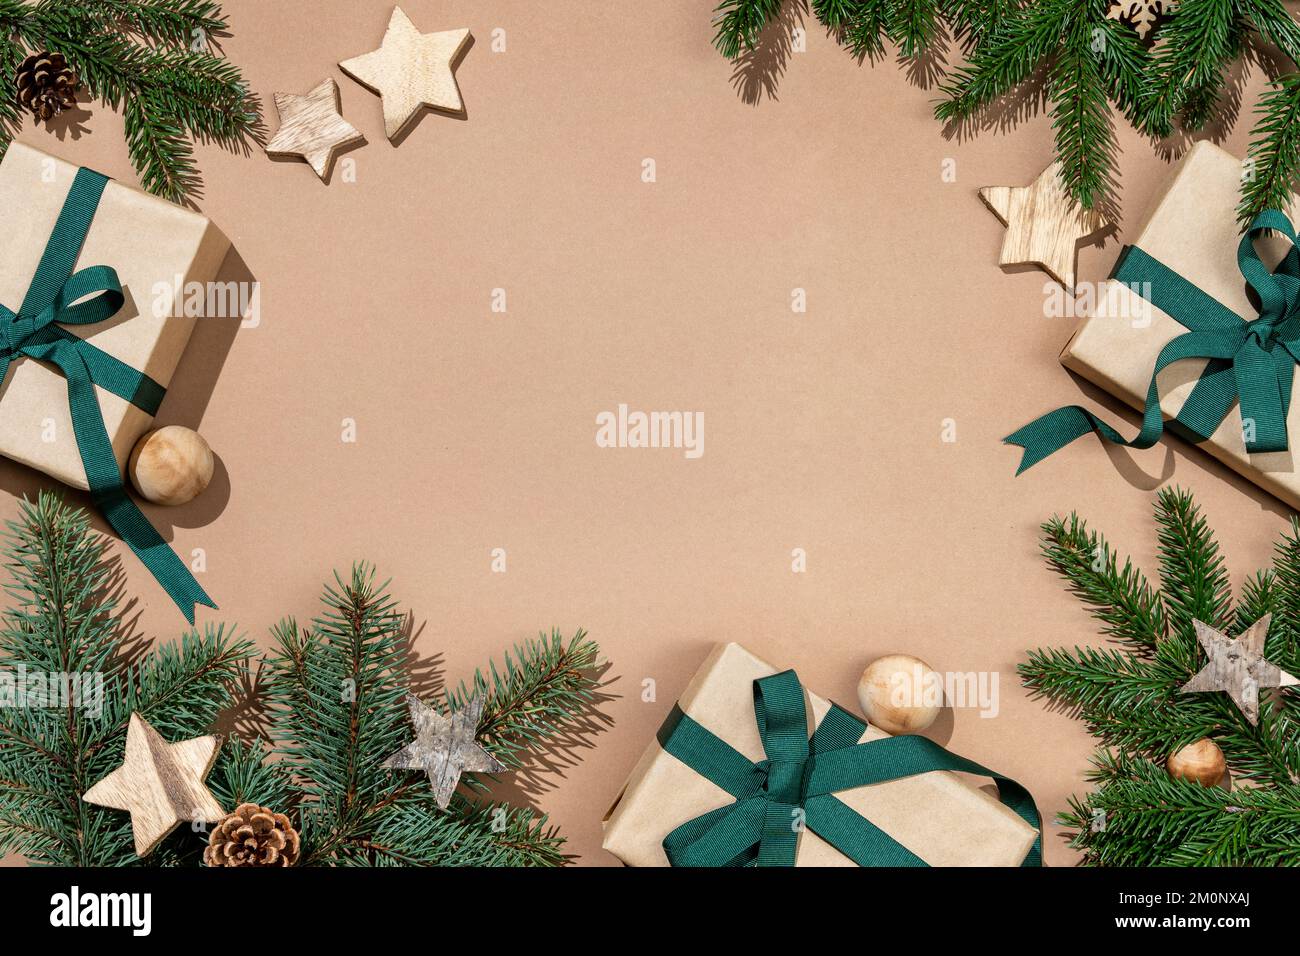 Tannenbäume mit hölzernen Sternen und Geschenkboxen auf beigefarbenem Hintergrund. Merry Christmas und Happy New Year Concept Stockfoto